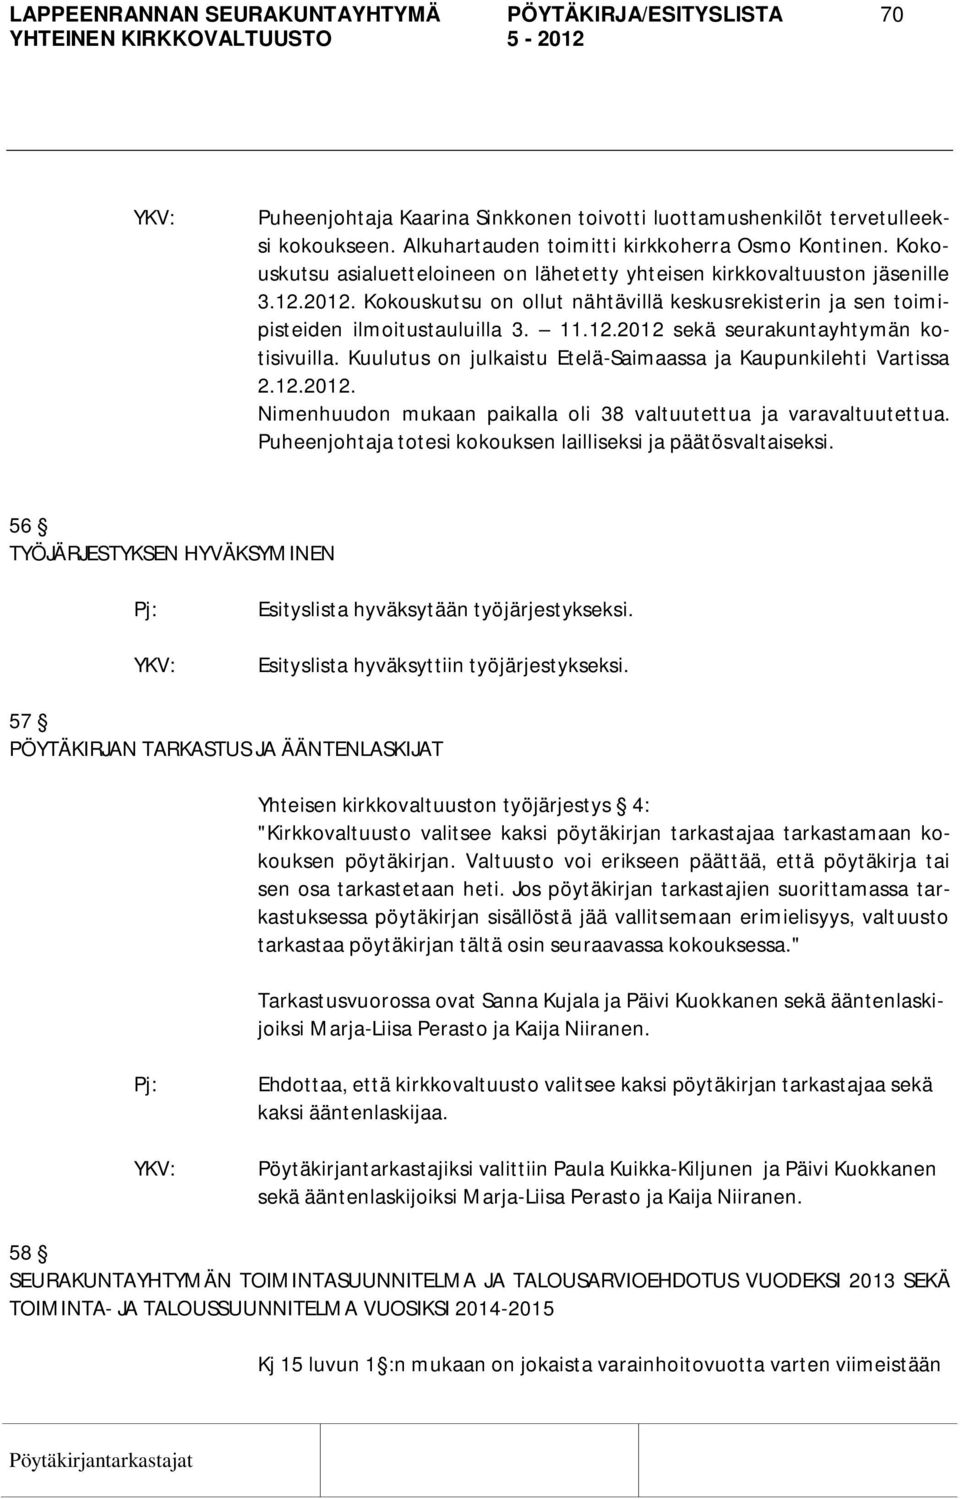 Kuulutus on julkaistu Etelä-Saimaassa ja Kaupunkilehti Vartissa 2.12.2012. Nimenhuudon mukaan paikalla oli 38 valtuutettua ja varavaltuutettua.